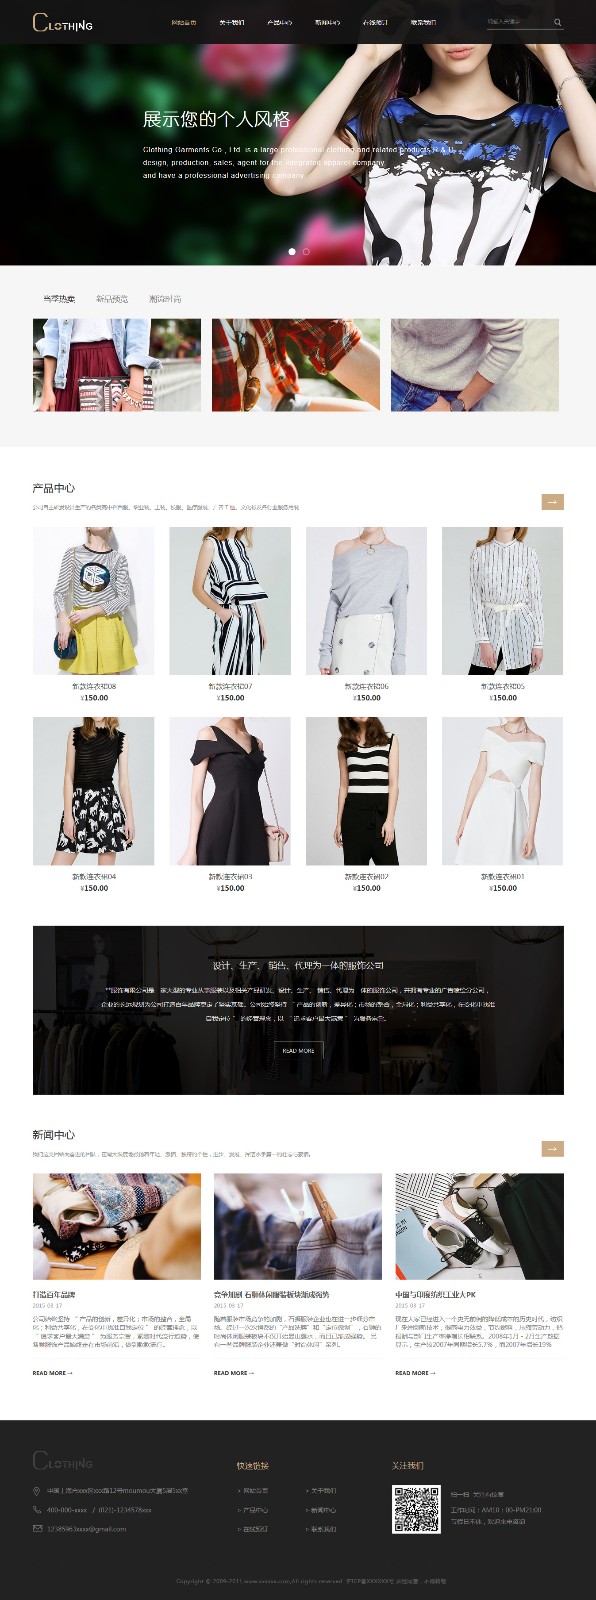 企业网站精美模板-clothing-1258729